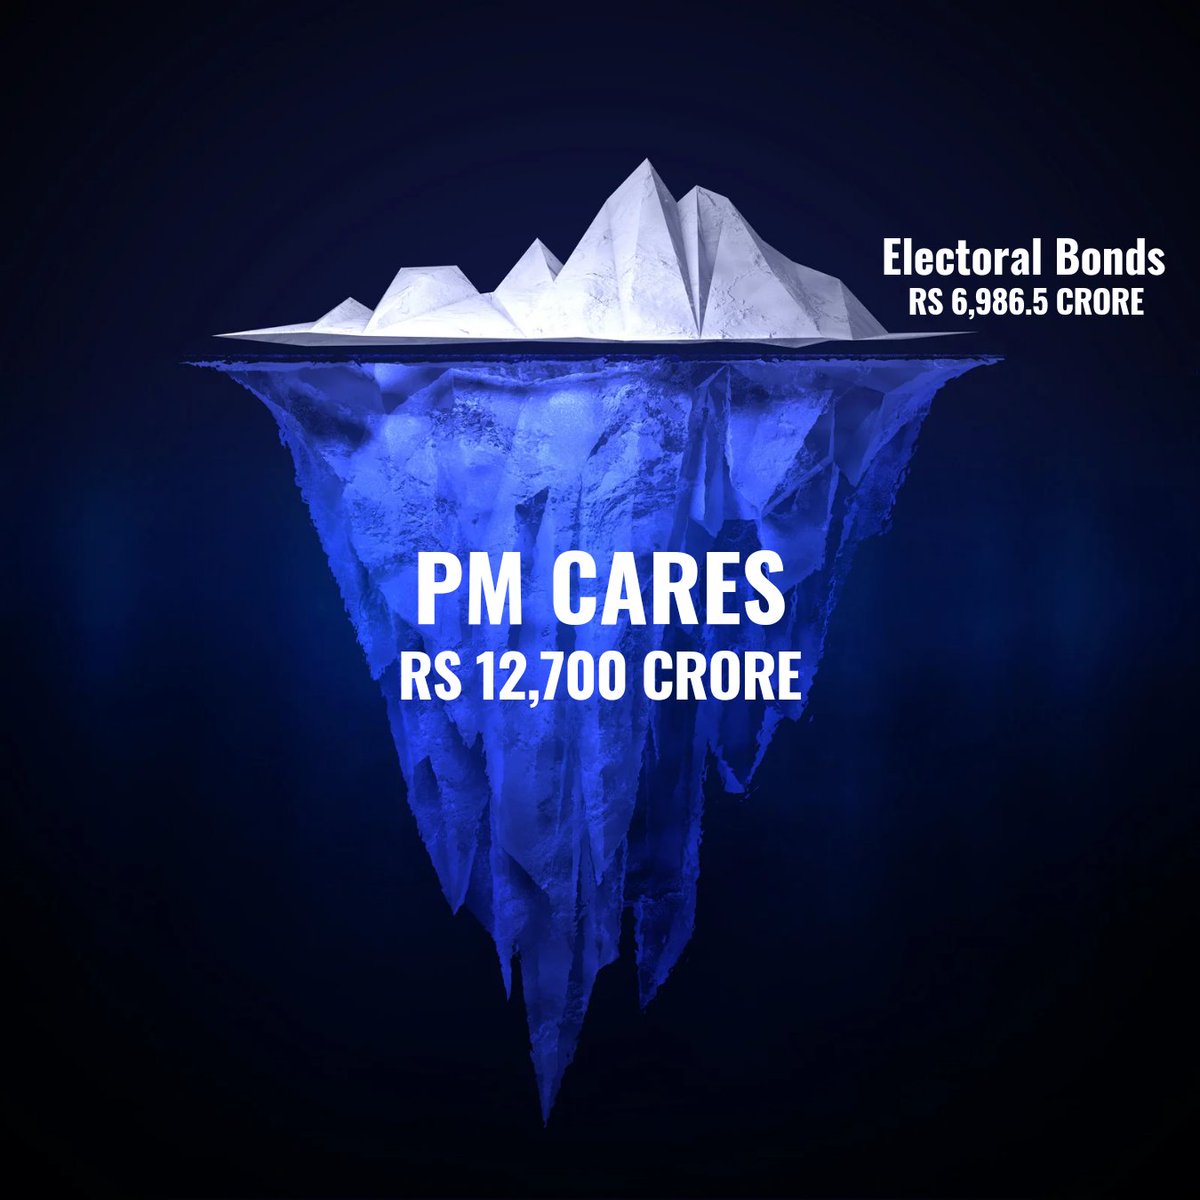 इलेक्टोरल बॉन्ड्स तो झांकी है,
पीएम केयर फंड बाकी है।
#ElectoralBondScam #PMCareScam